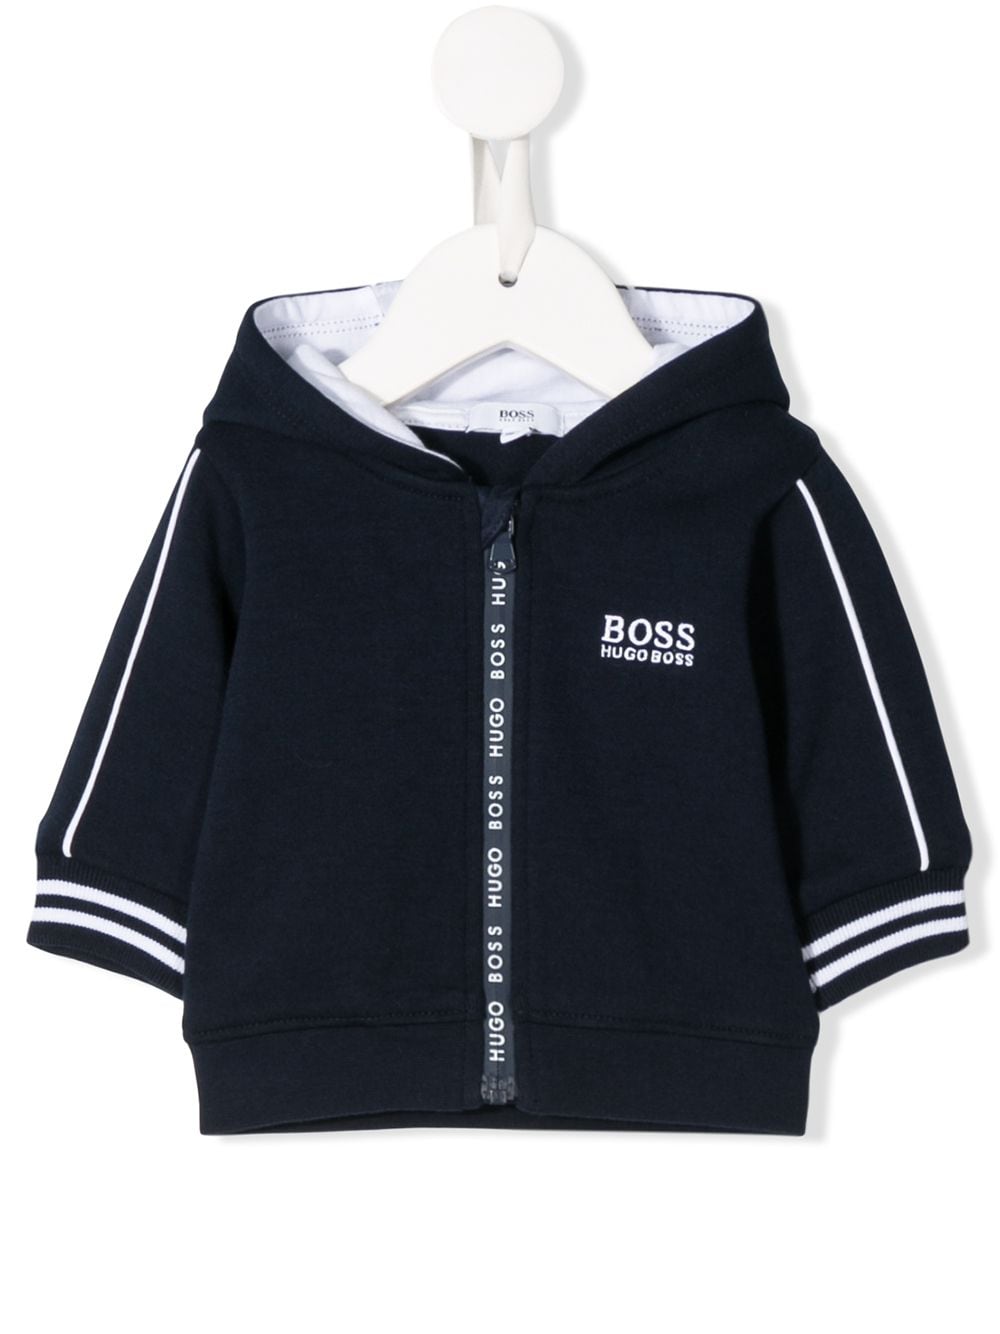 blue hugo boss hoodie